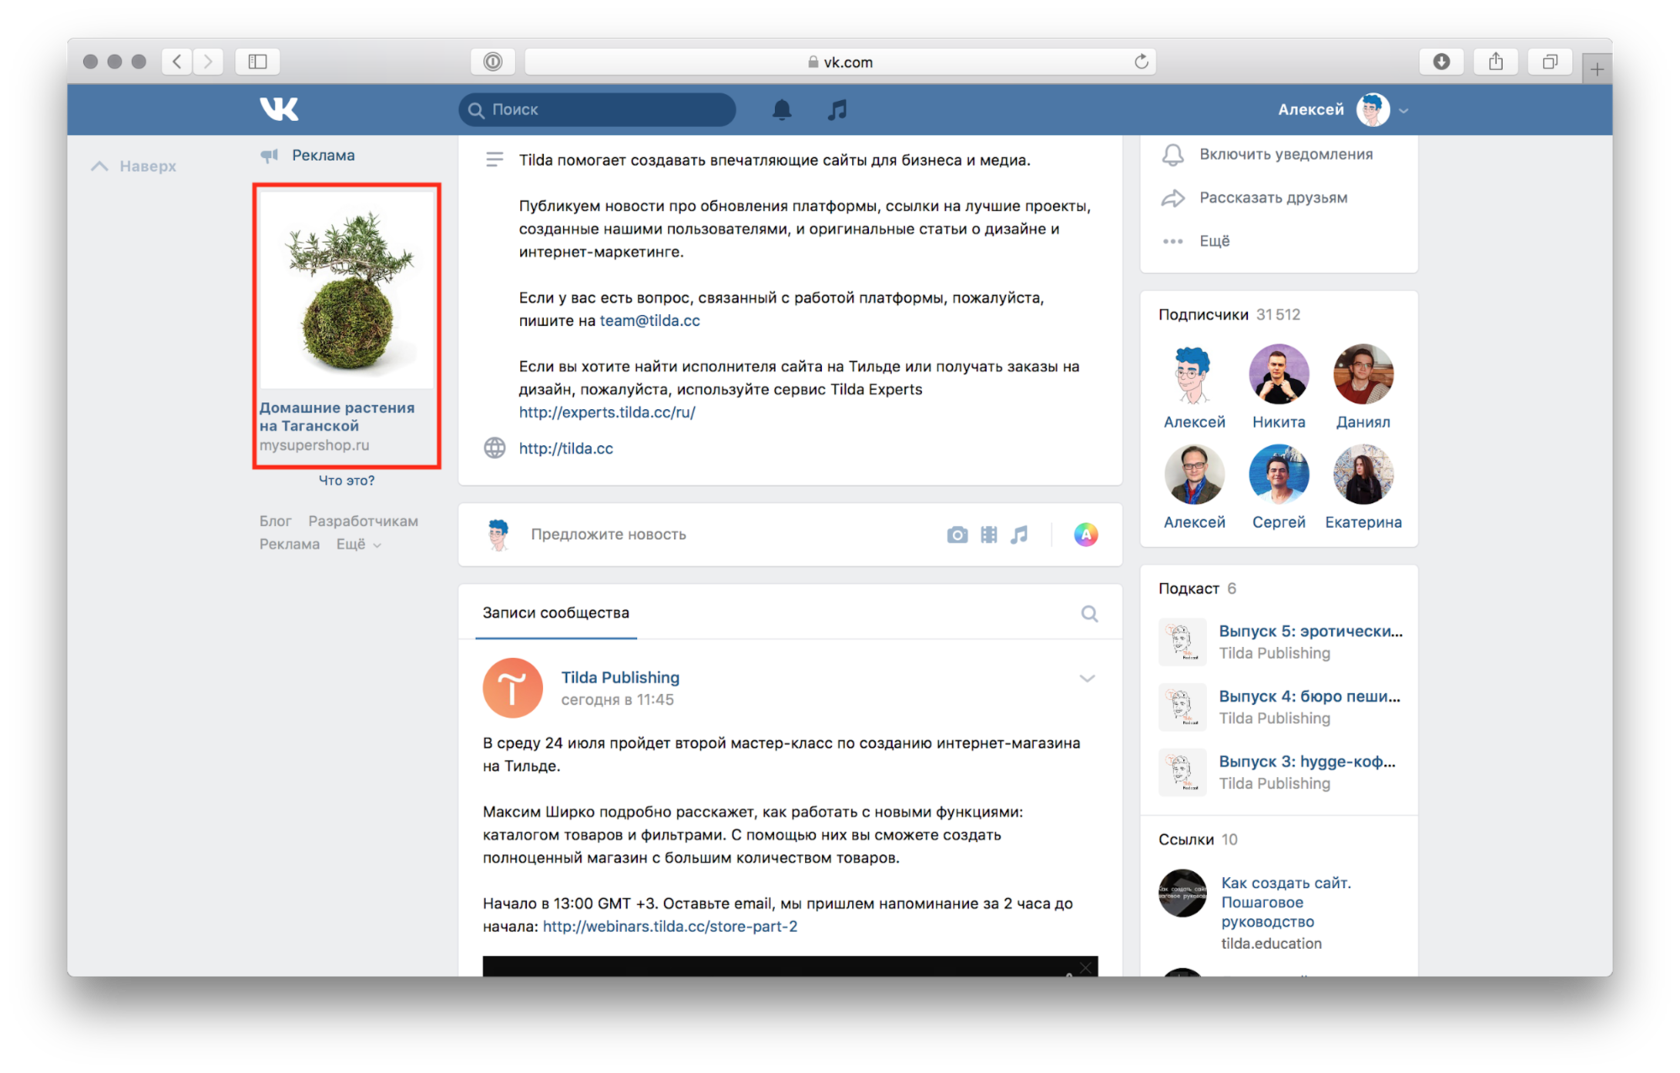 Как назначить администратора в группе ВКонтакте